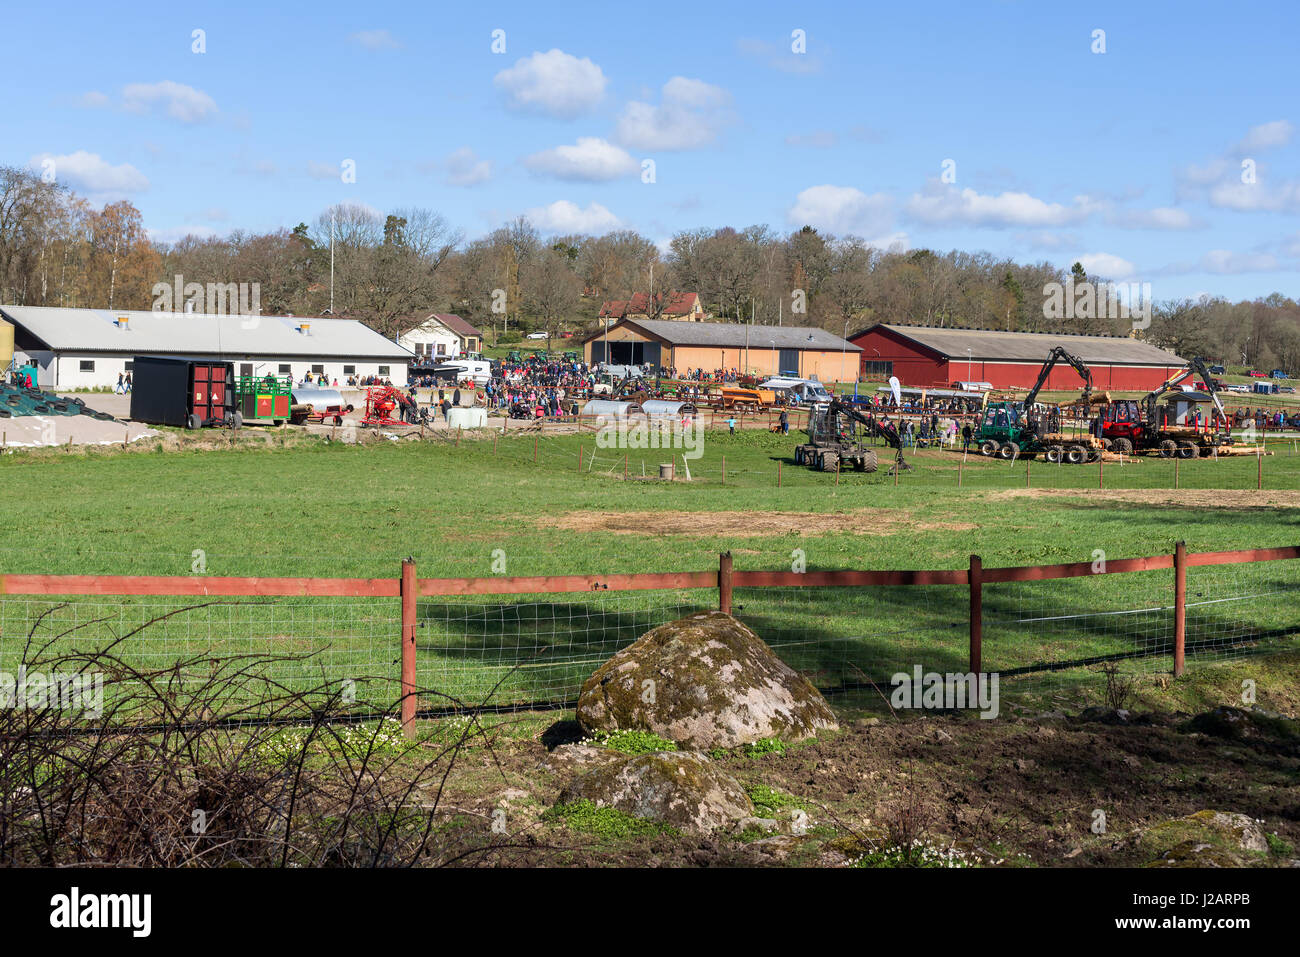 Brakne Hoby, Schweden - 22. April 2017: Dokumentation der öffentlichen Kleinbauern Tag. Die Landwirtschaftsschule Hof verwendet für das Ereignis aus der Ferne gesehen. Stockfoto